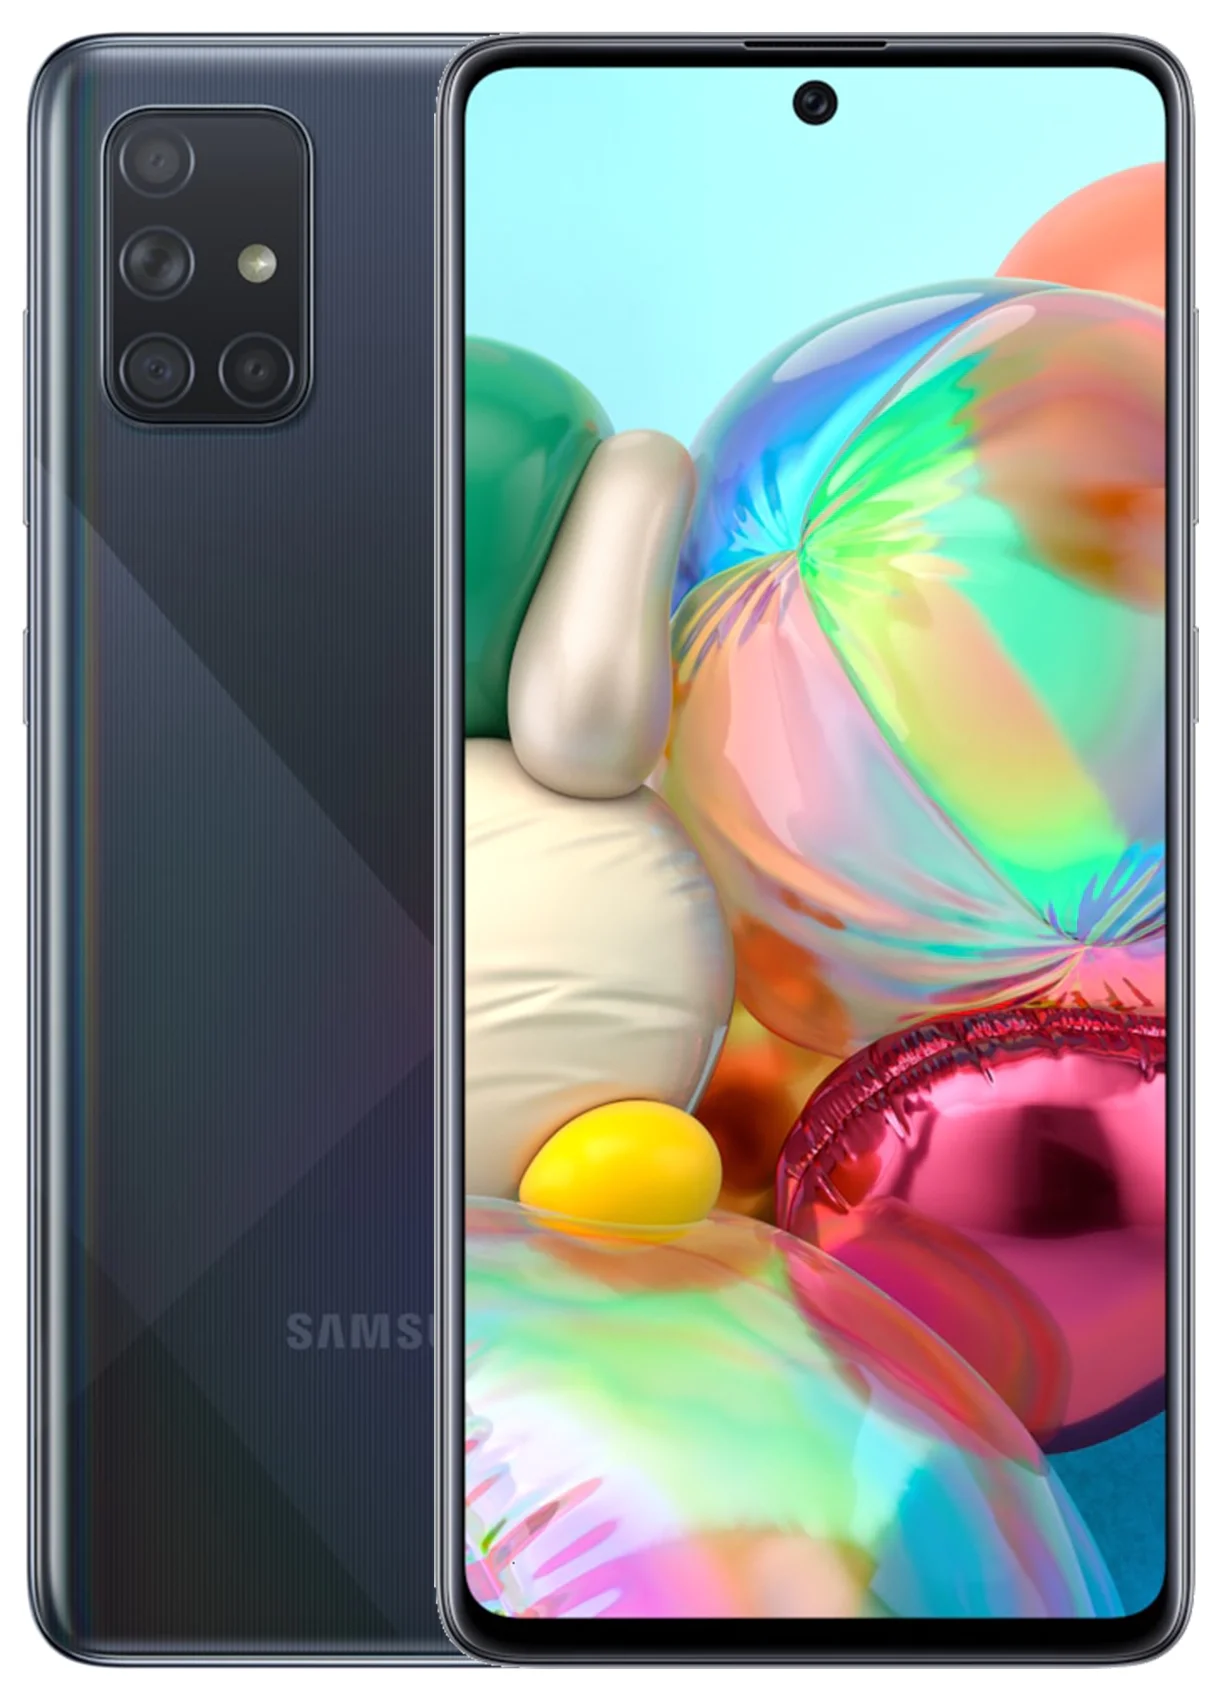 Samsung Galaxy A71 6/128GB - операционная система: Android 10